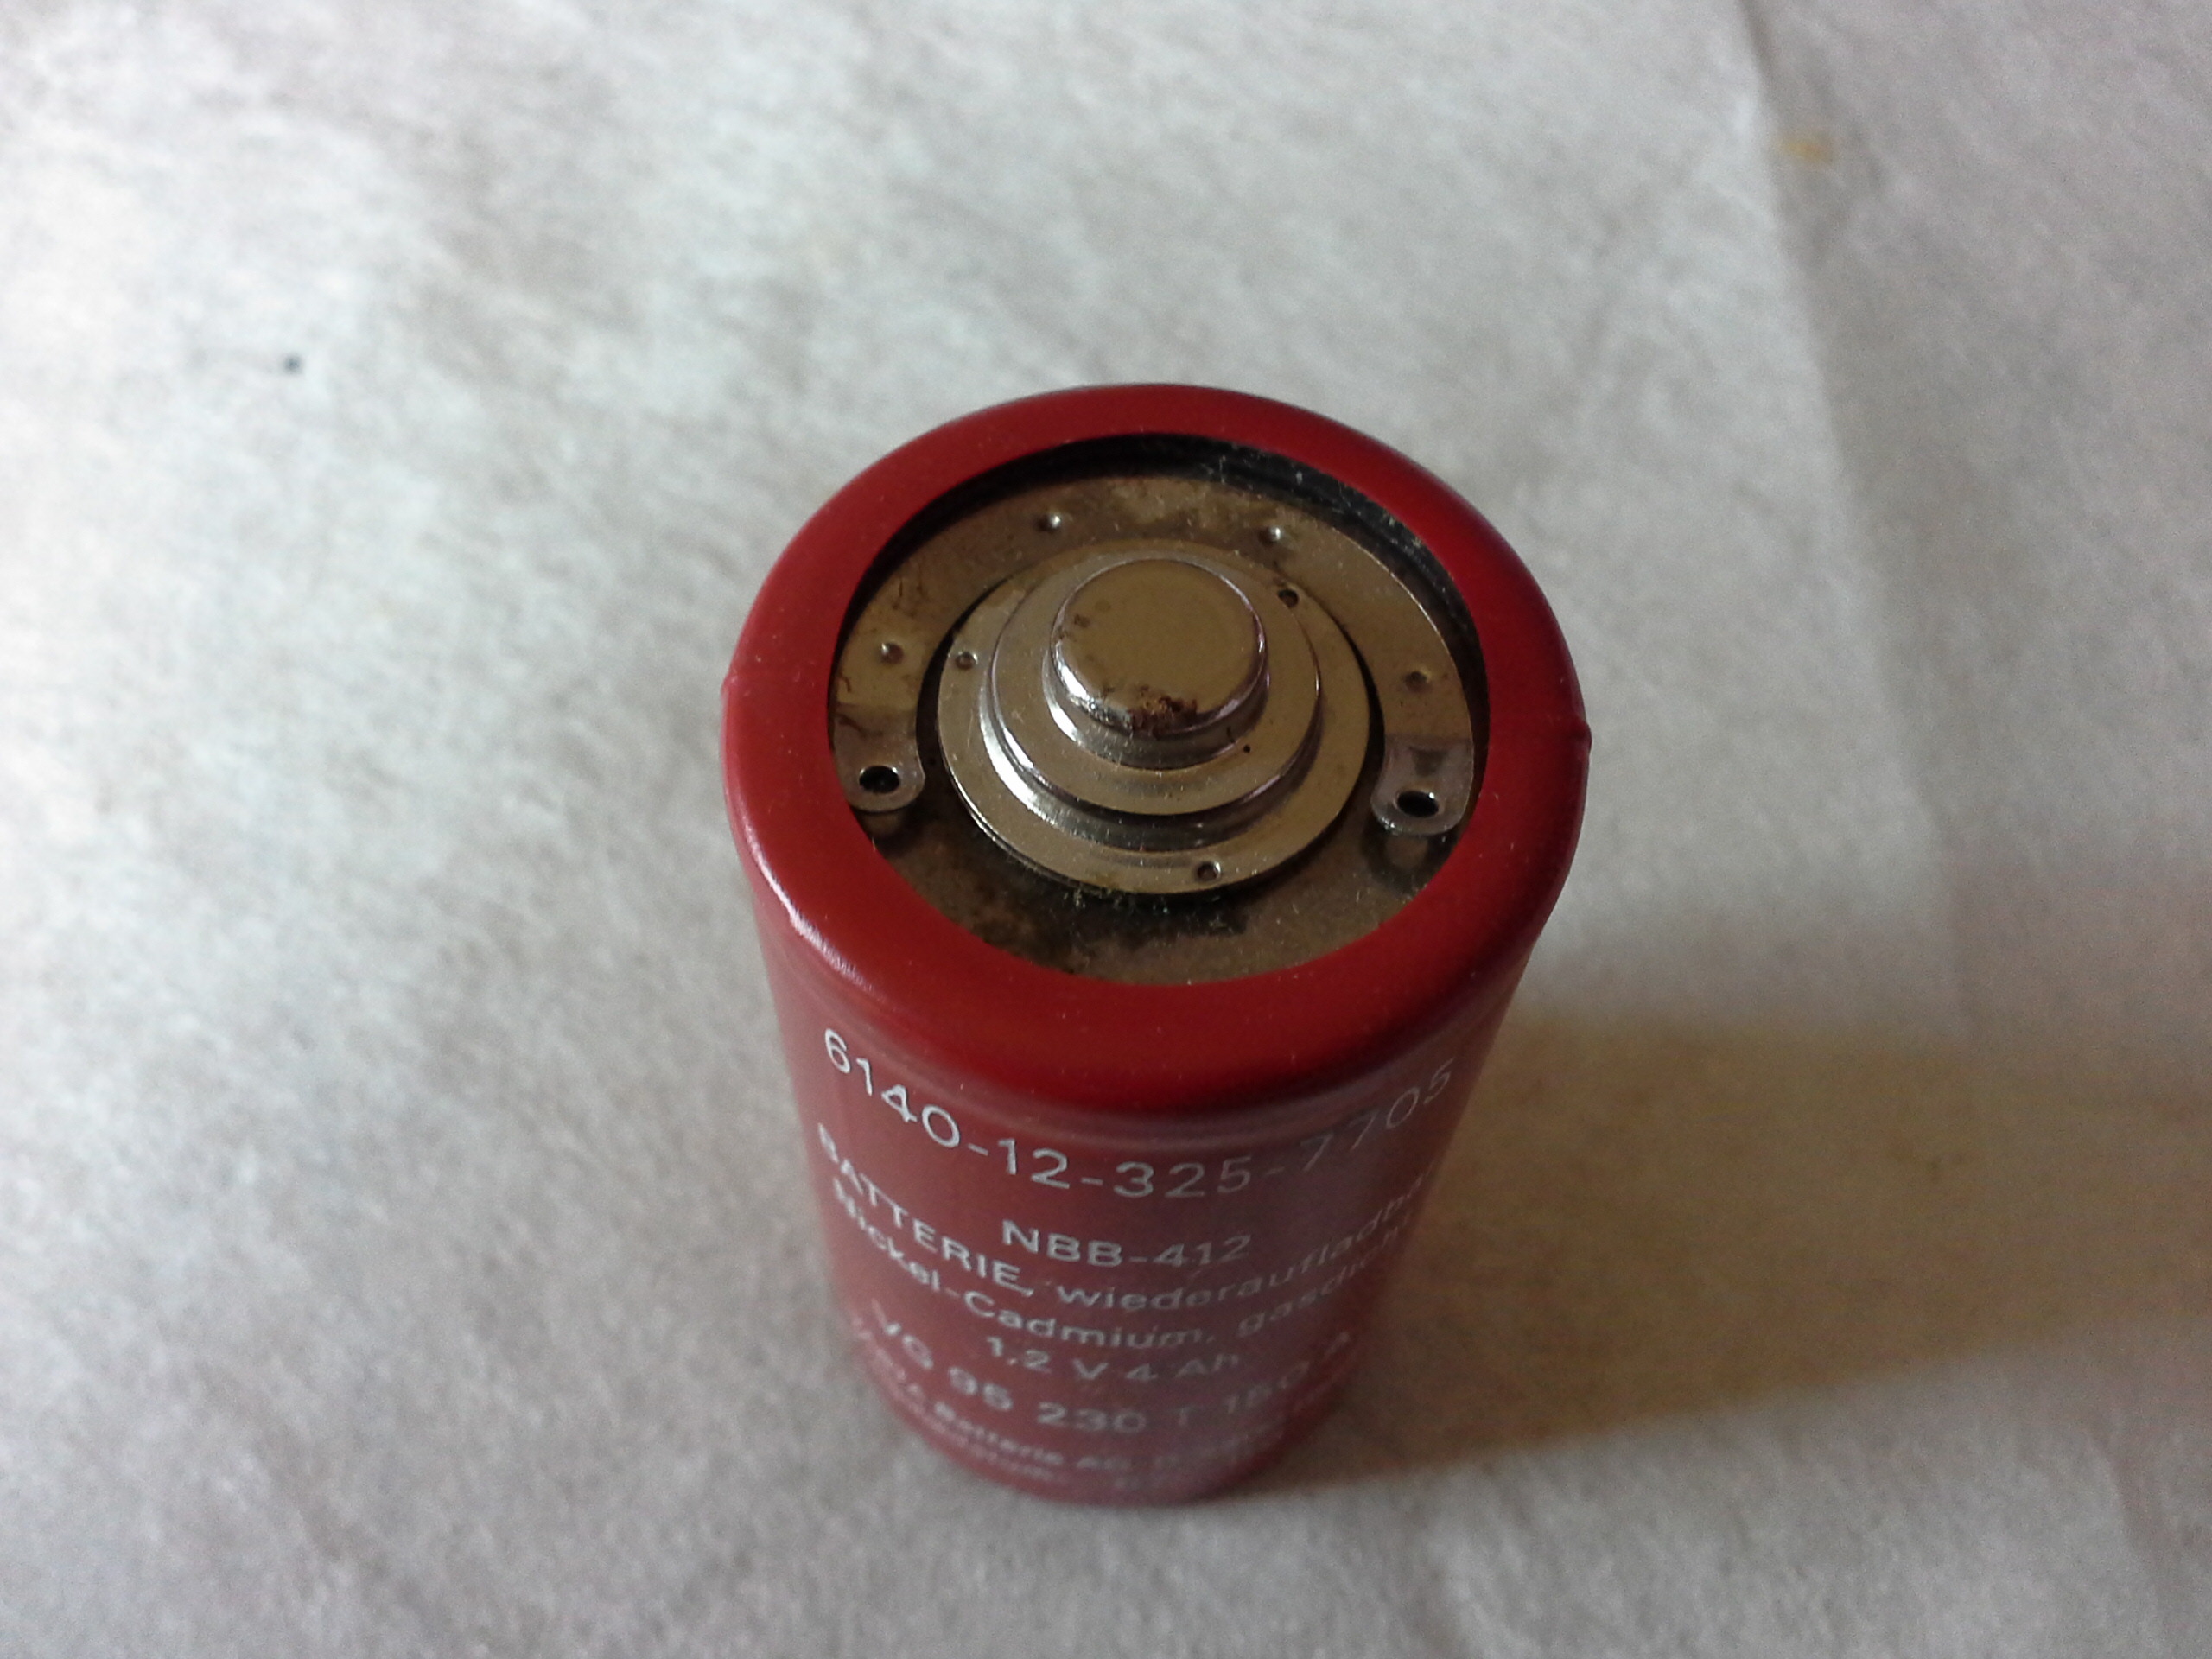 Wiederaufladbare Varta Batterie NBB 412 - 1,2V - 4 Ah